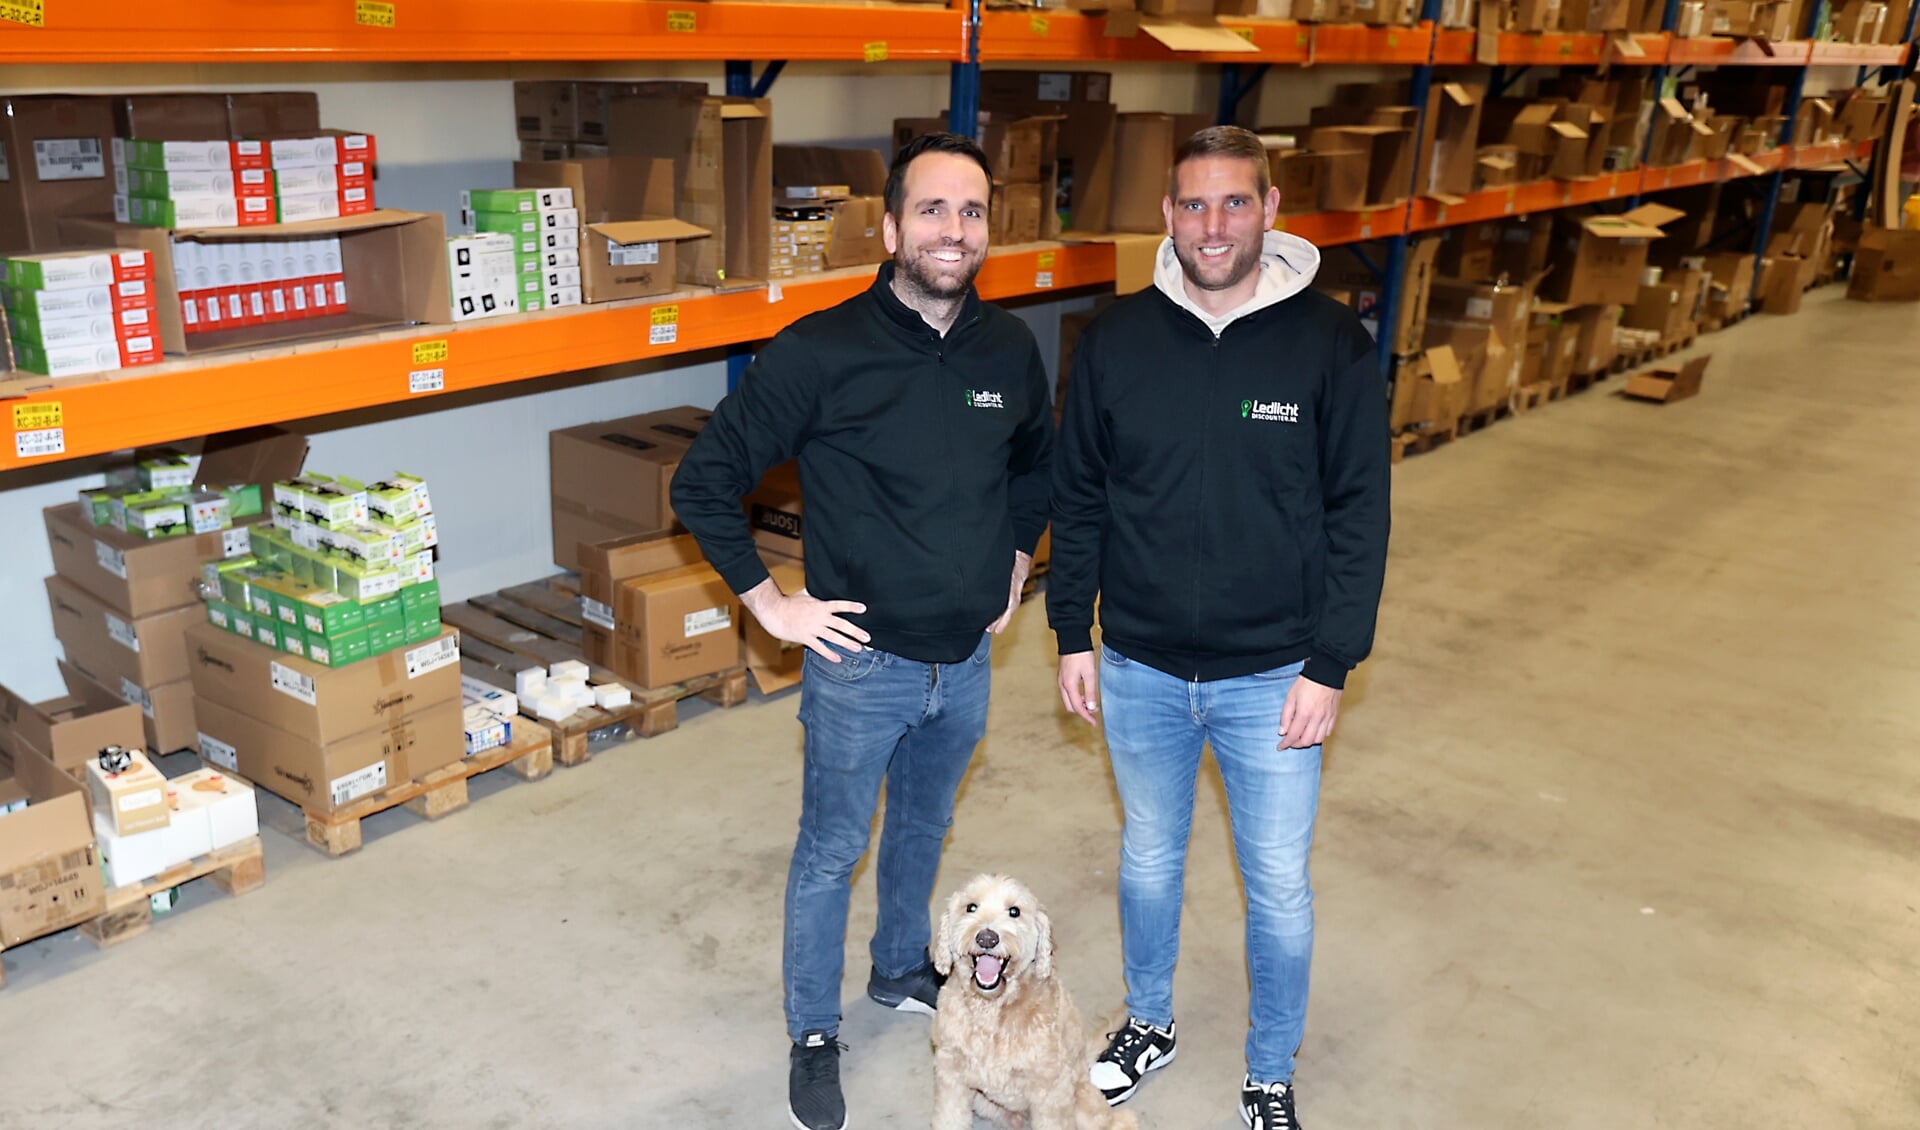 Eigenaar Michael Castricum (links) met Sales Manager Jeffrey van Kleef en in het midden hondje Teddy. (Foto: Fred Rotgans)